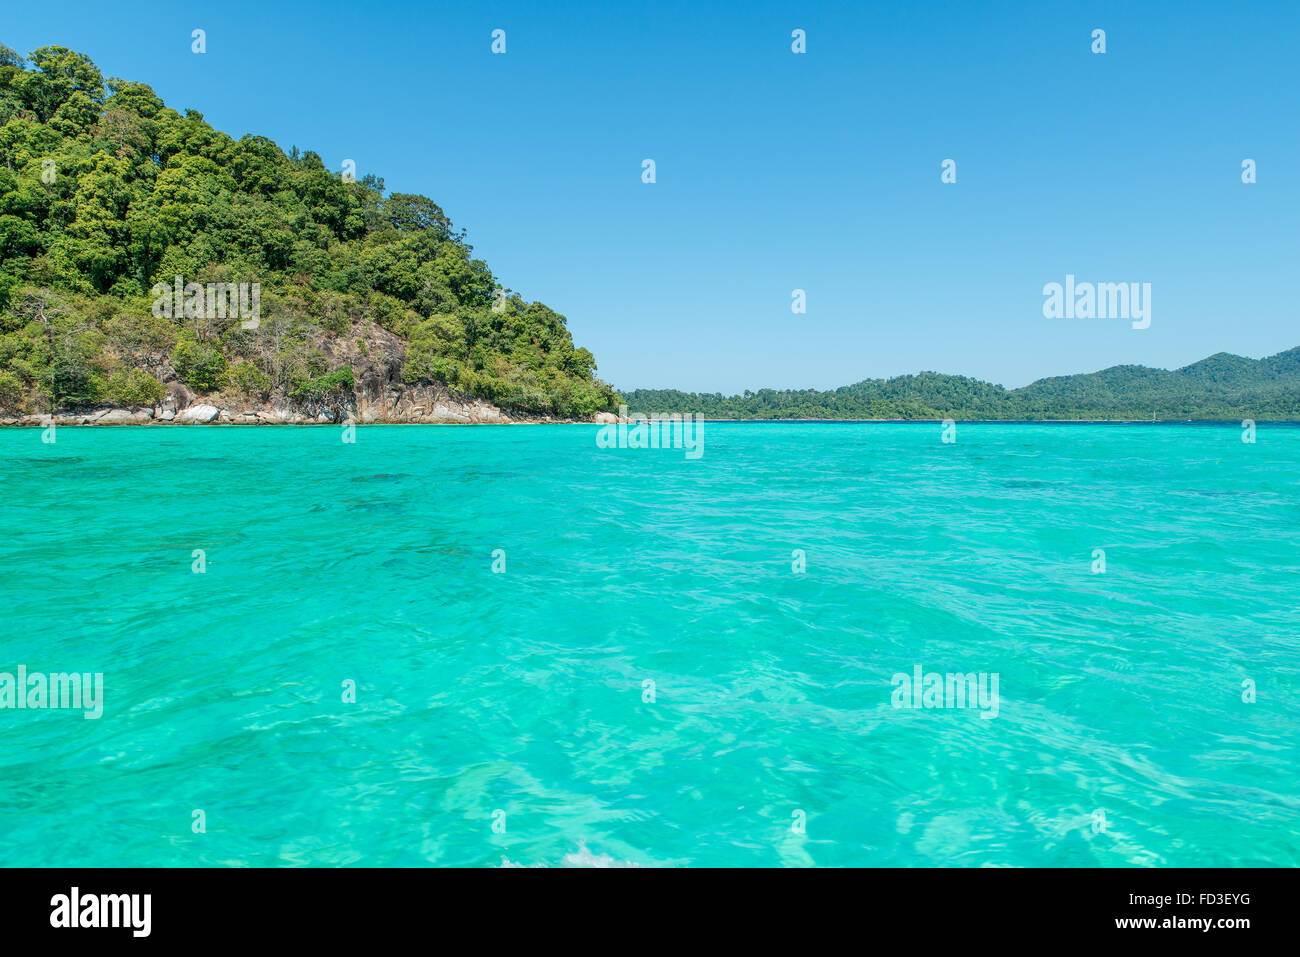 L'été, les voyages, vacances et Maison de Vacances - concept de l'île idyllique de la baie tranquille à Phuket, Thaïlande Banque D'Images